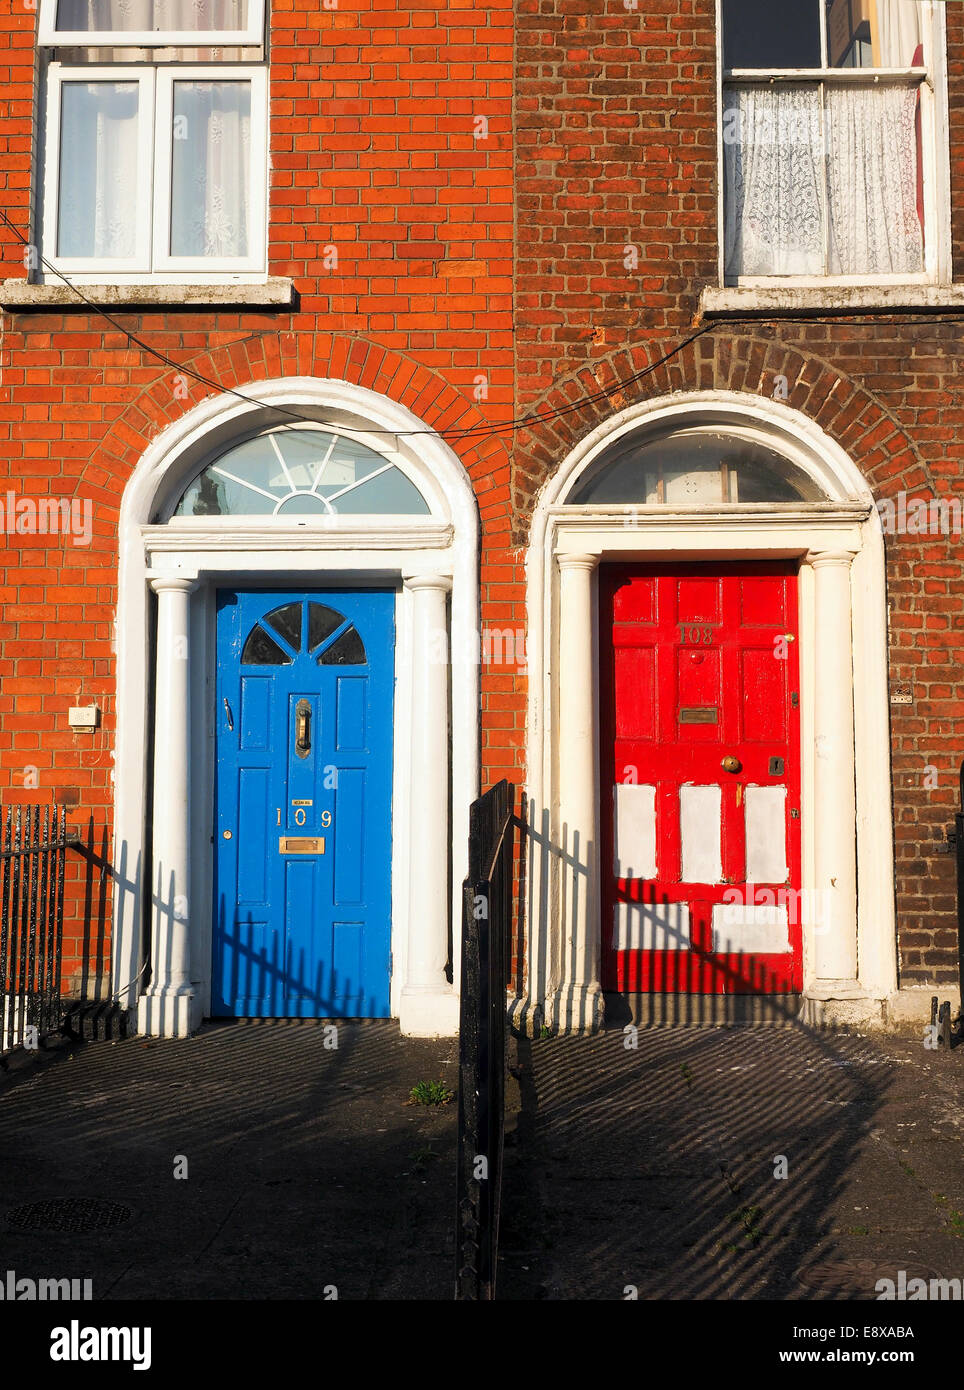 Maison de vacances portes colorées typiques de l'Irlande Dublin Europe Banque D'Images